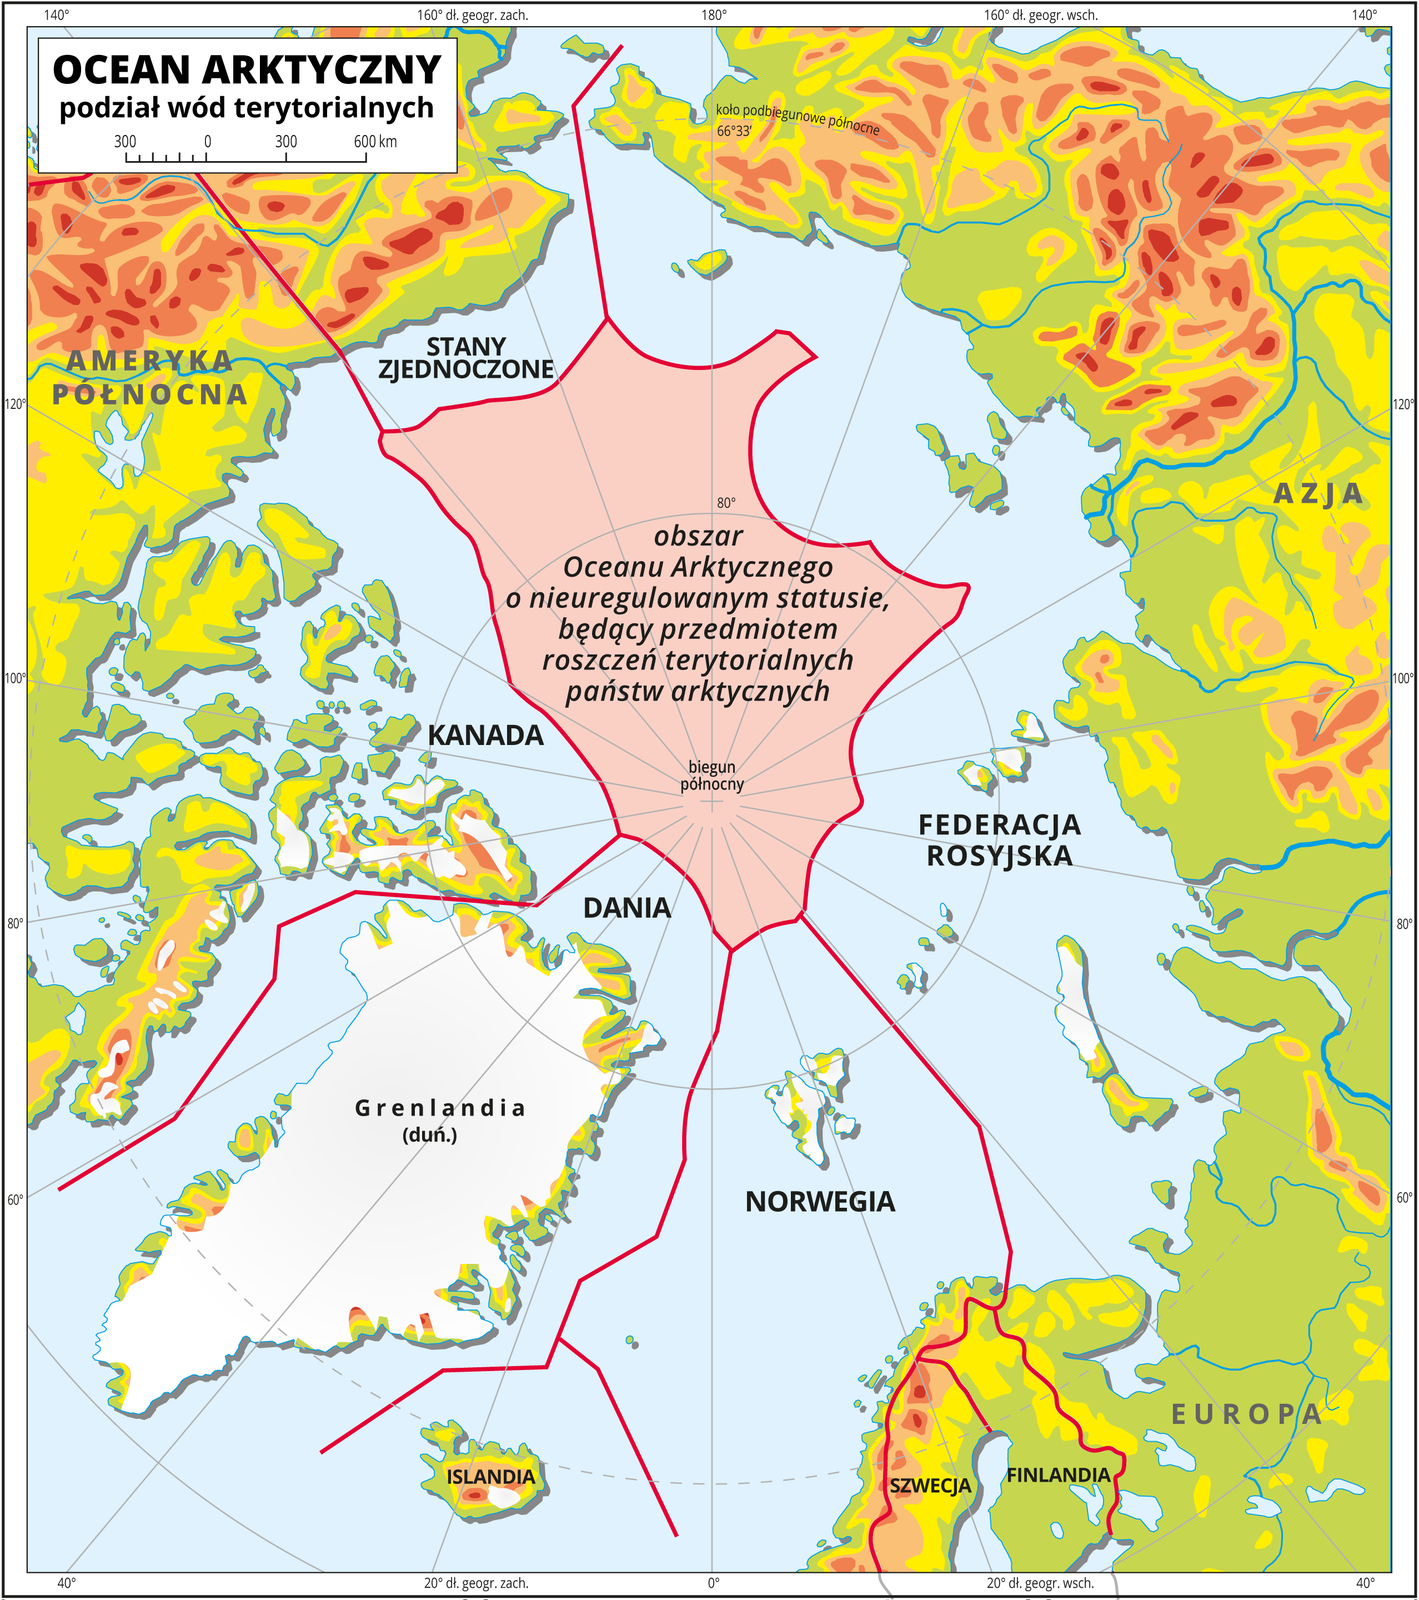 Ilustracja przedstawia mapę Oceanu Arktycznego. Na mapie przedstawiono podział wód terytorialnych. Poprowadzono czerwone linie. Przypisano obszary Oceanu Arktycznego Stanom Zjednoczonym, Kanadzie, Danii, Norwegii, Federacji Rosyjskiej. Centralną cześć Oceanu Arktycznego wokół bieguna północnego opisano jako obszar Oceanu Arktycznego o nieuregulowanym statusie, będący przedmiotem roszczeń terytorialnych państw arktycznych. Na mapie są południki i równoleżniki, które opisano w białej ramce dookoła mapy co dwadzieścia stopni. Dookoła zastosowano podziałkę liniową od 0 do 600 km, co 300 km. Po lewej stronie od 0 do 300 km podziałka podzielona jest na mniejsze odcinki, co 50 km.